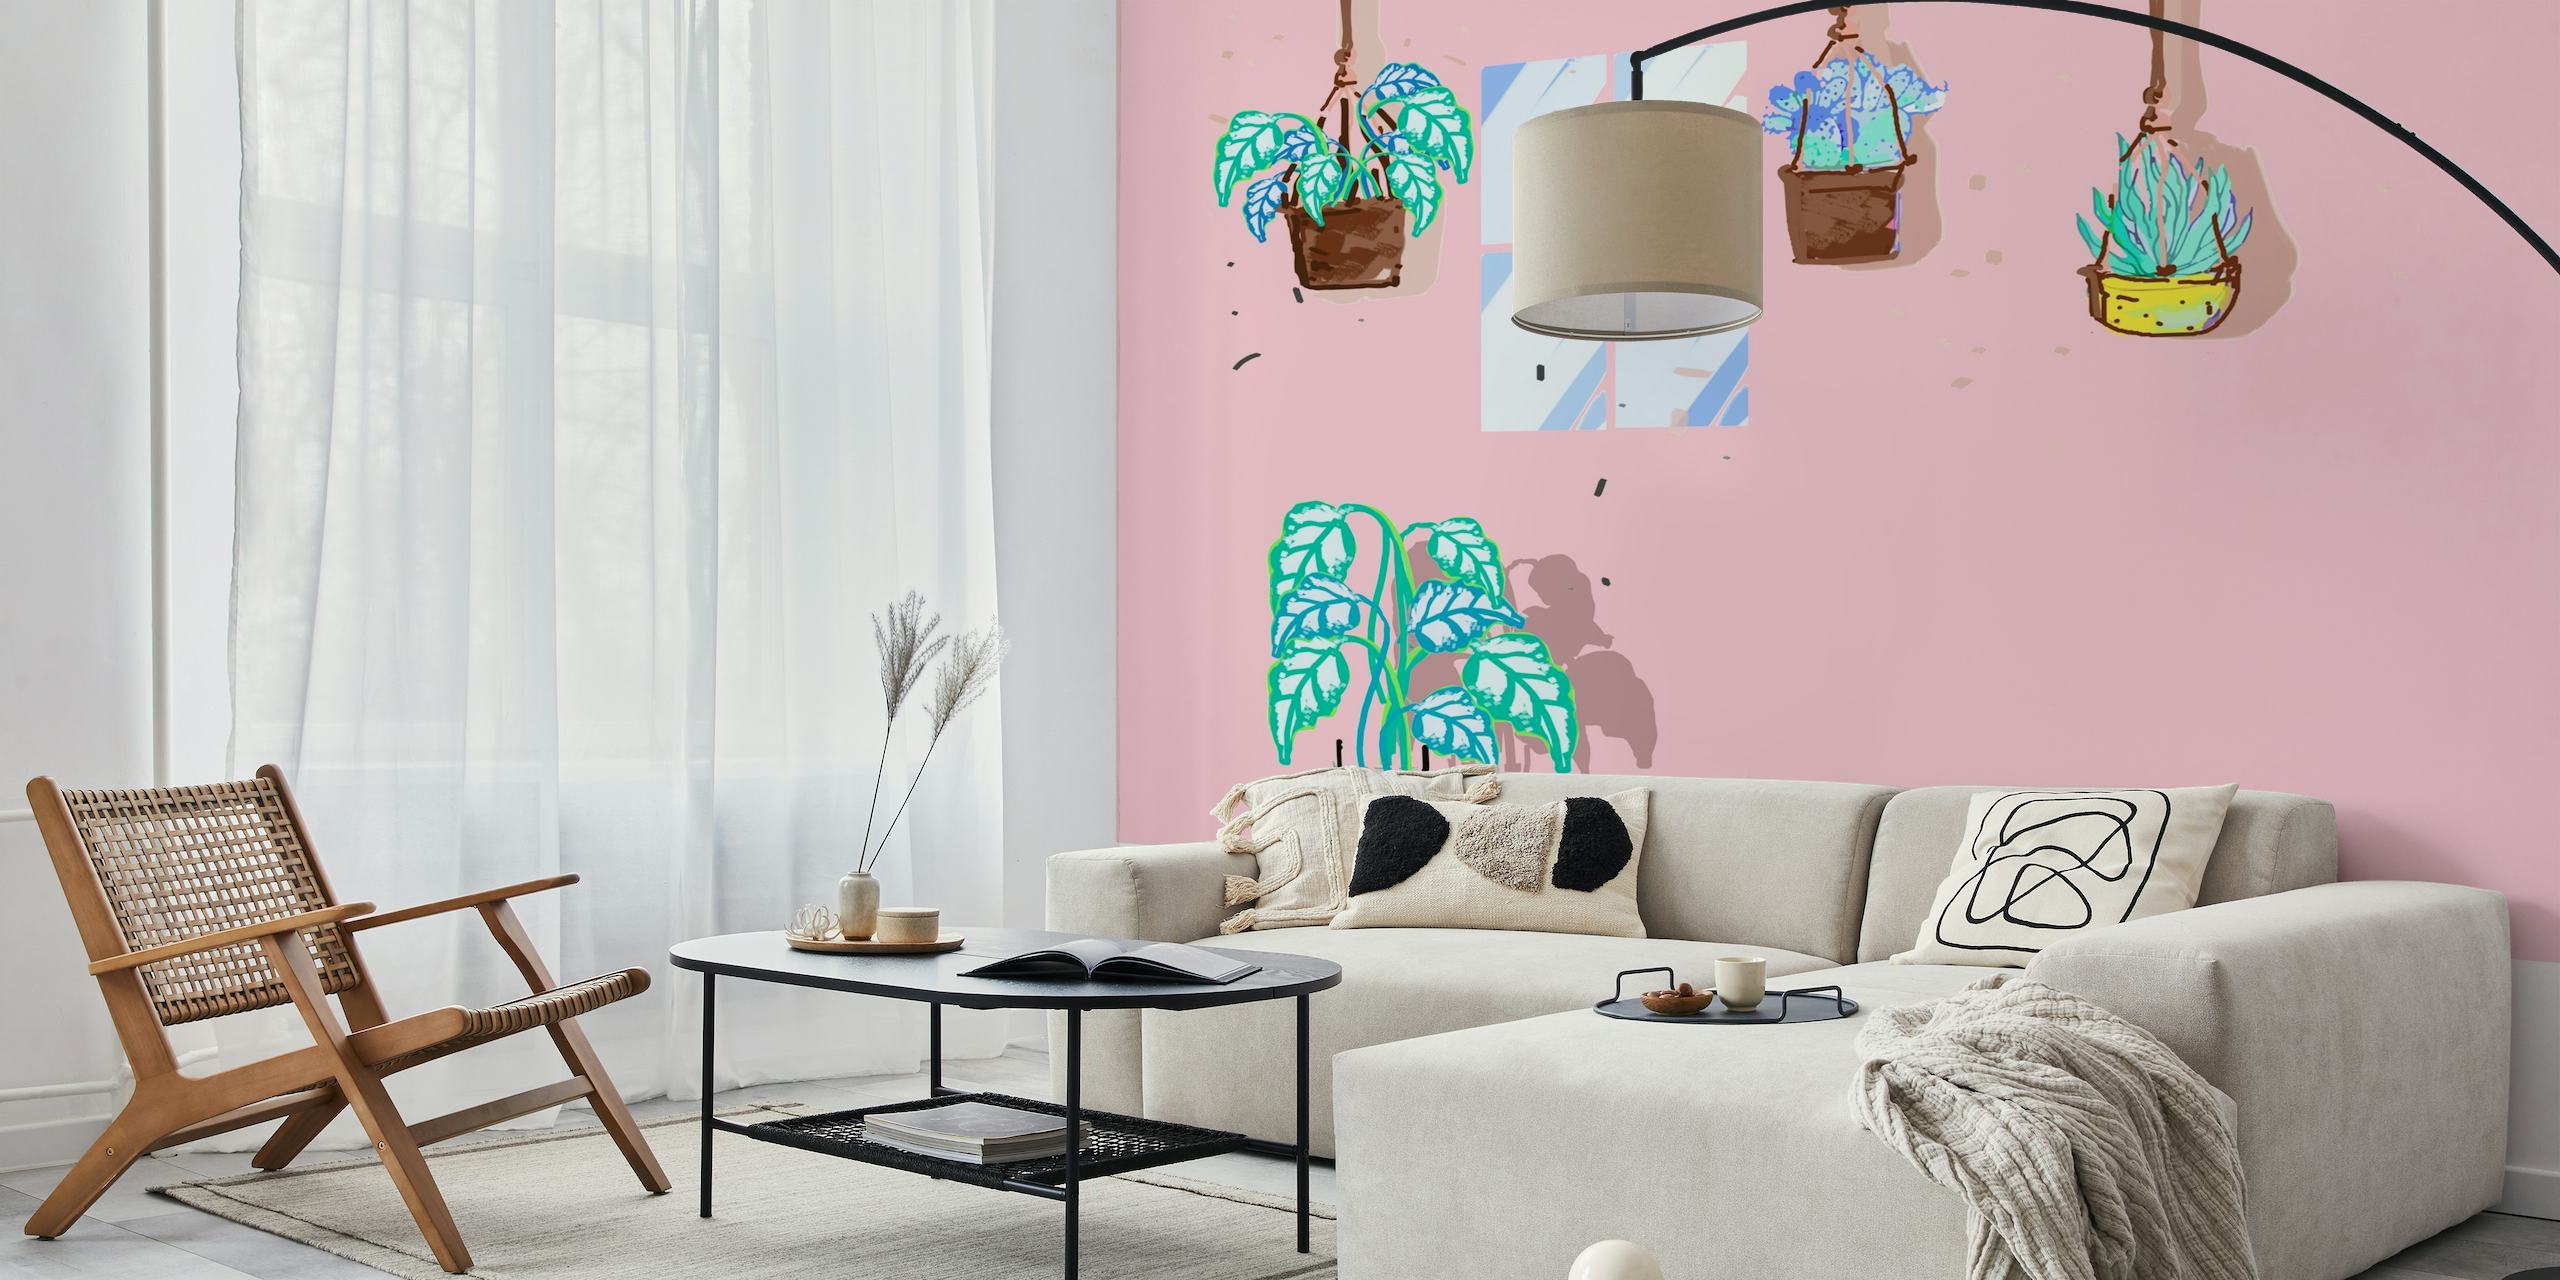 Met de hand getekende kamerplanten in potten muurschildering op een roze achtergrond